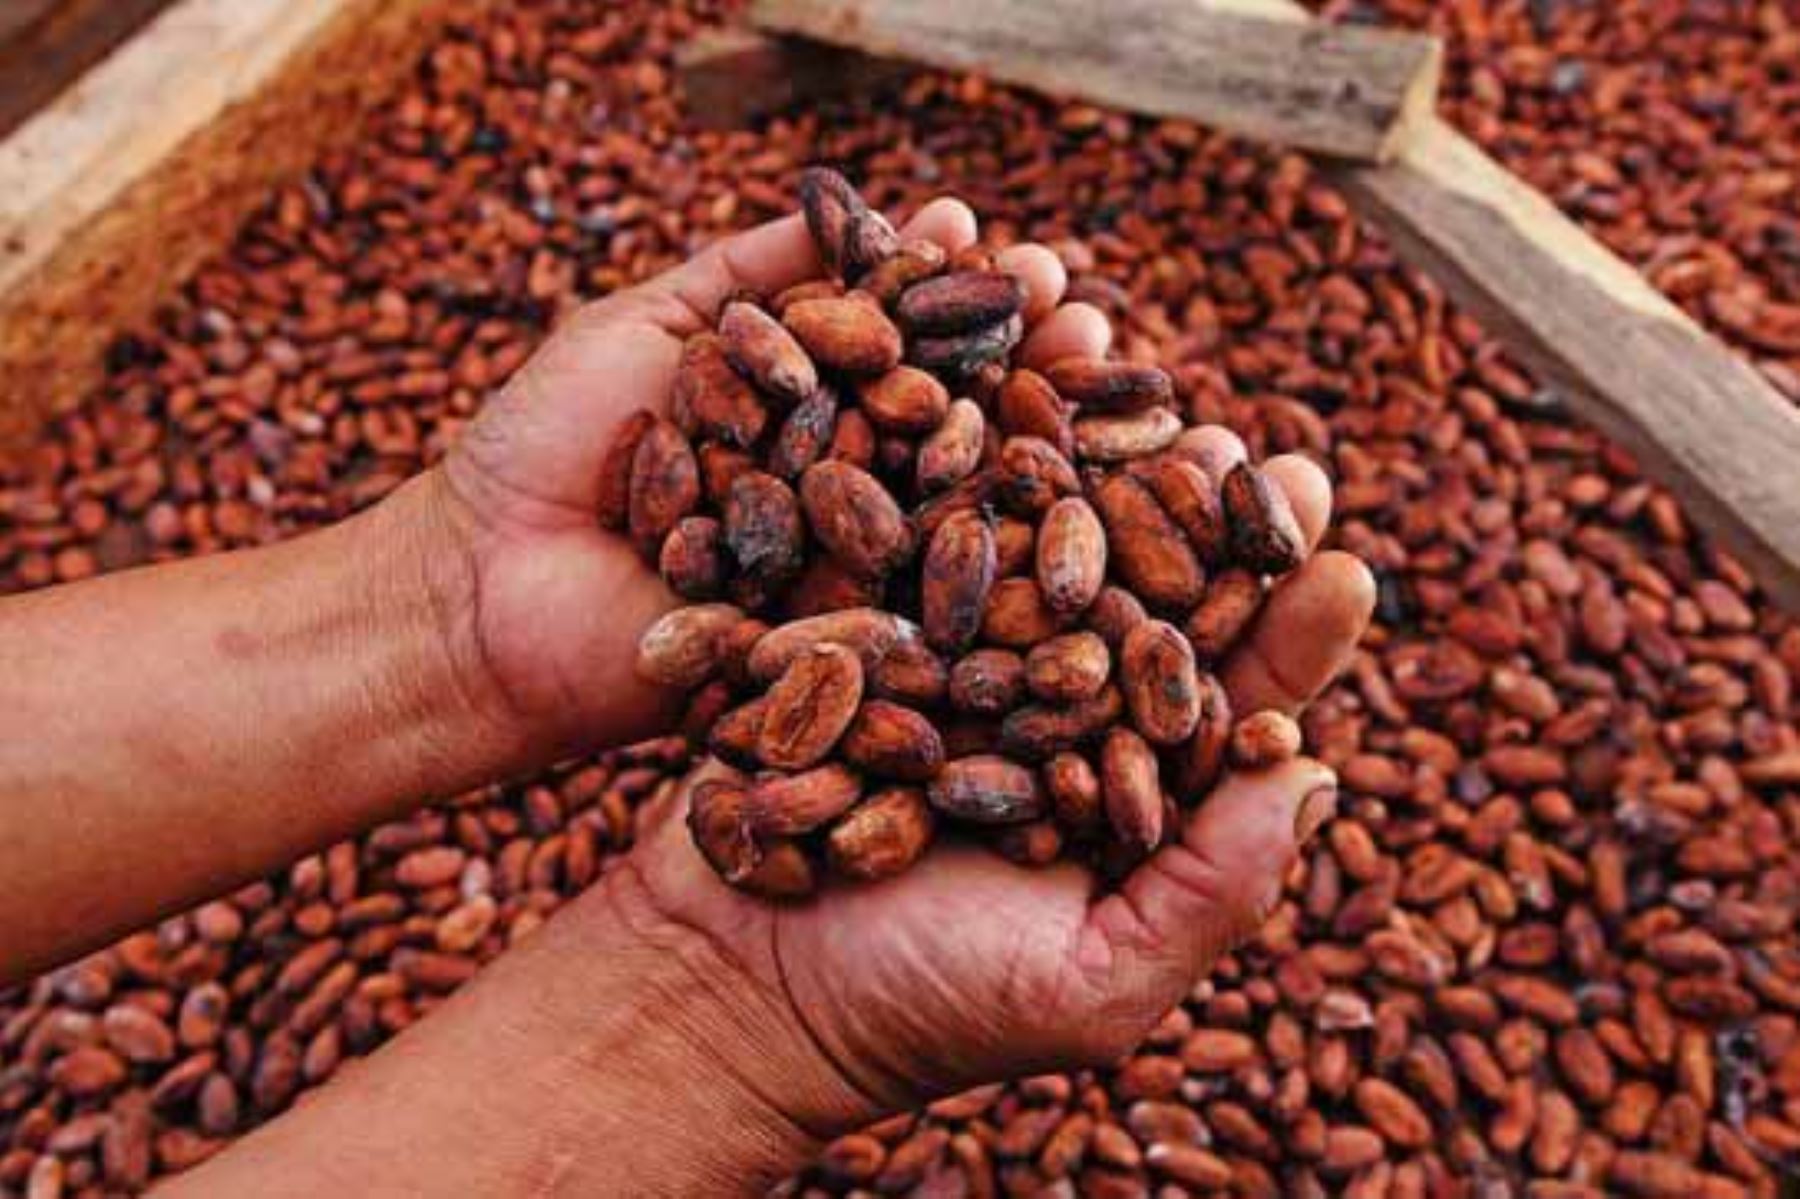 La región San Martín ocupa el primer lugar en producción de cacao, café, arroz, palma aceitera, plátanos, sacha inchi, entre otros productos. Foto: ANDINA/Difusión